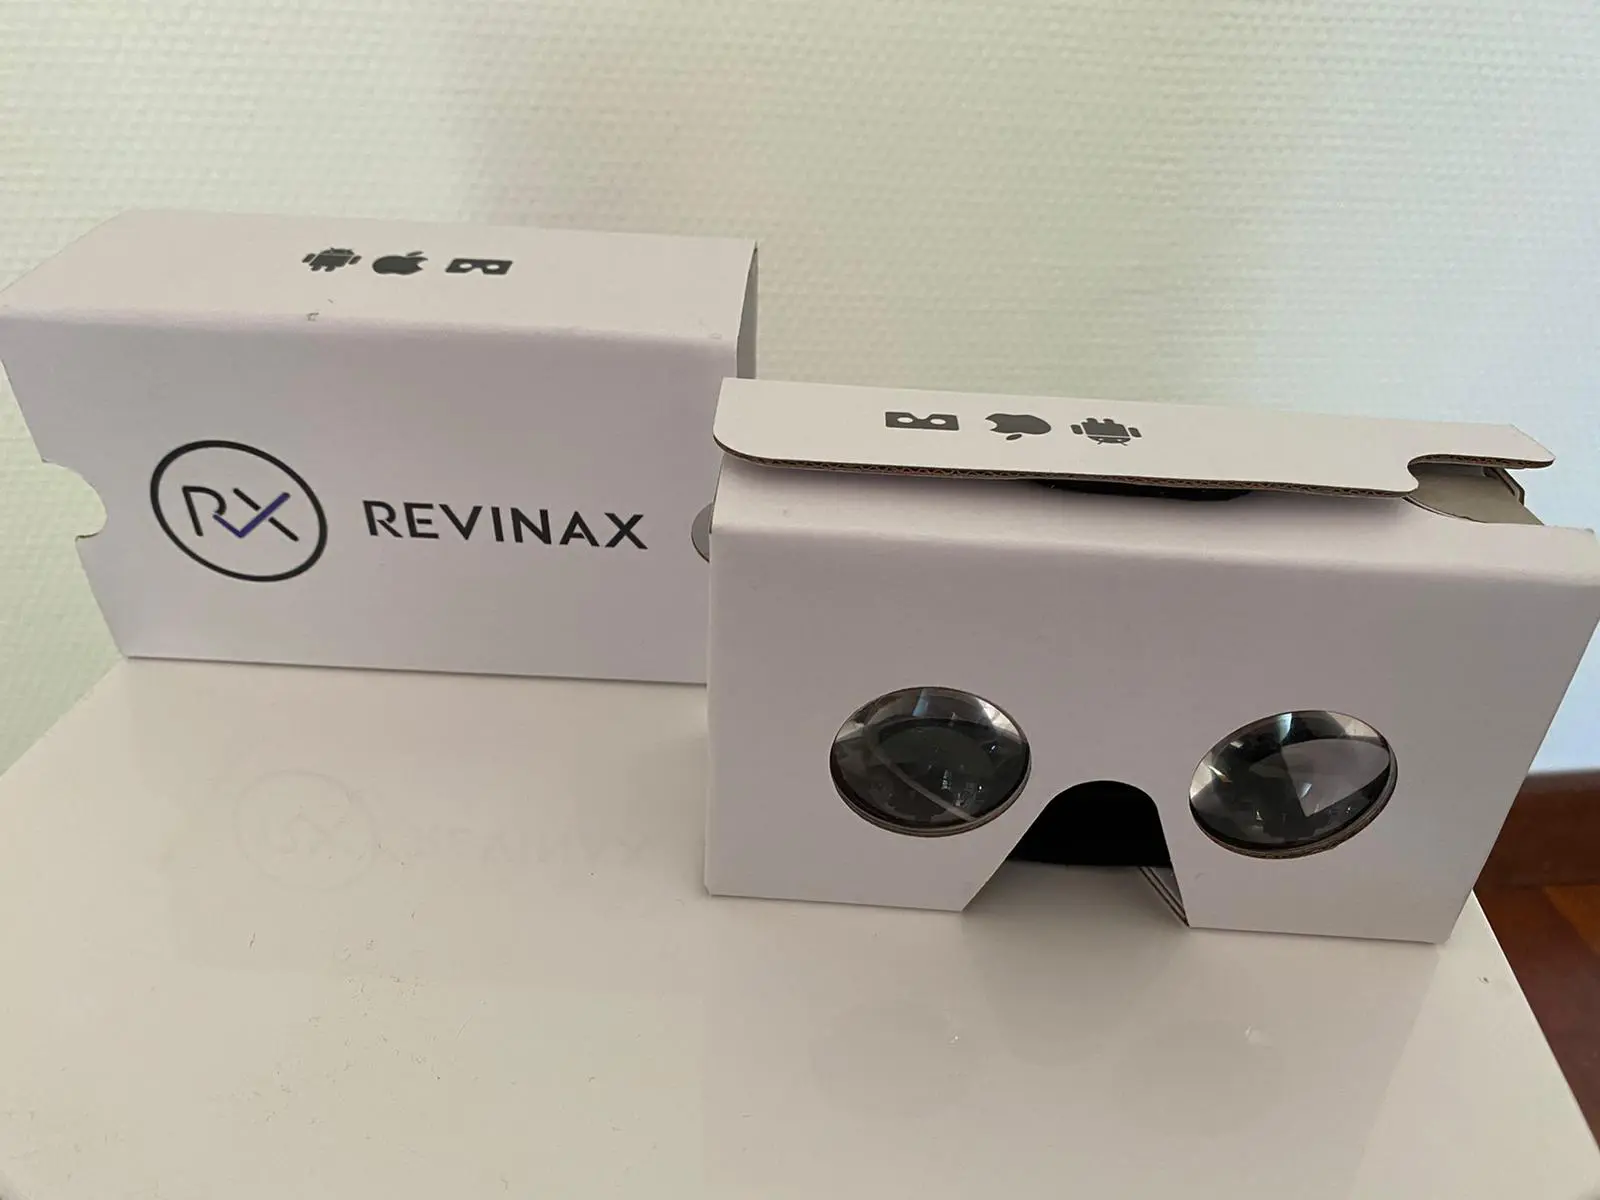 Le Carboard Revinax transforme votre Smartphone en casque VR recyclable